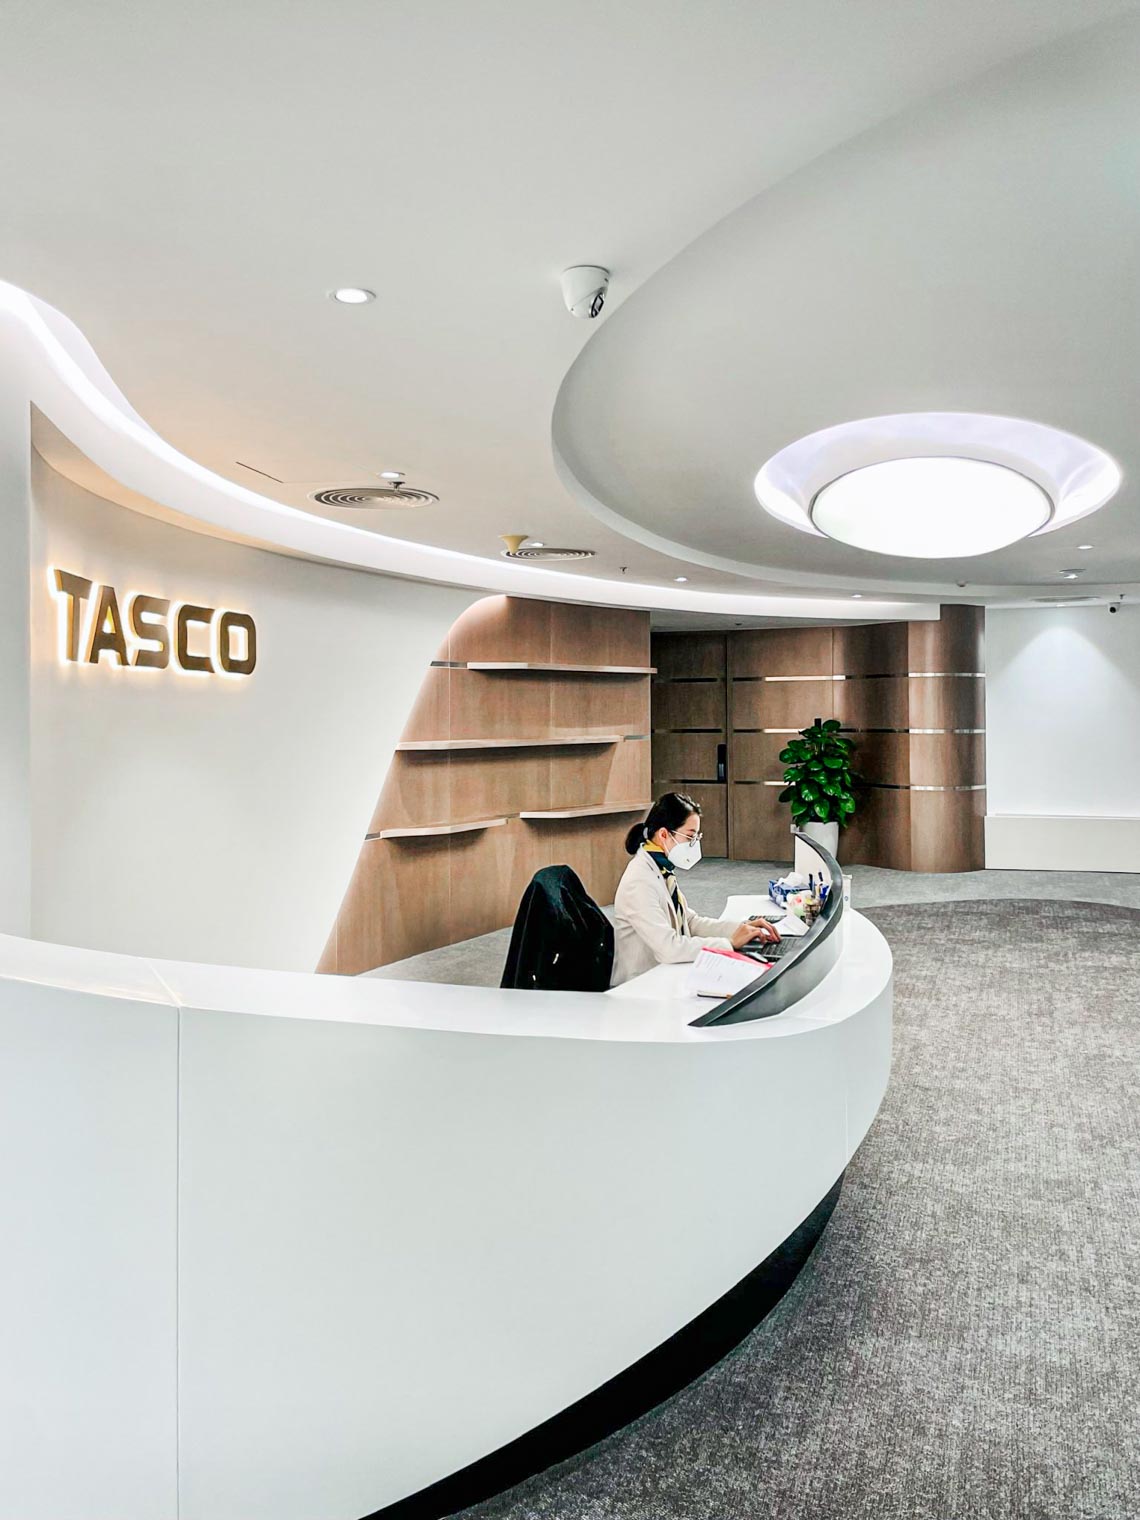 Tasco Office - văn phòng sức khoẻ cùng dòng chảy năng lượng - 7